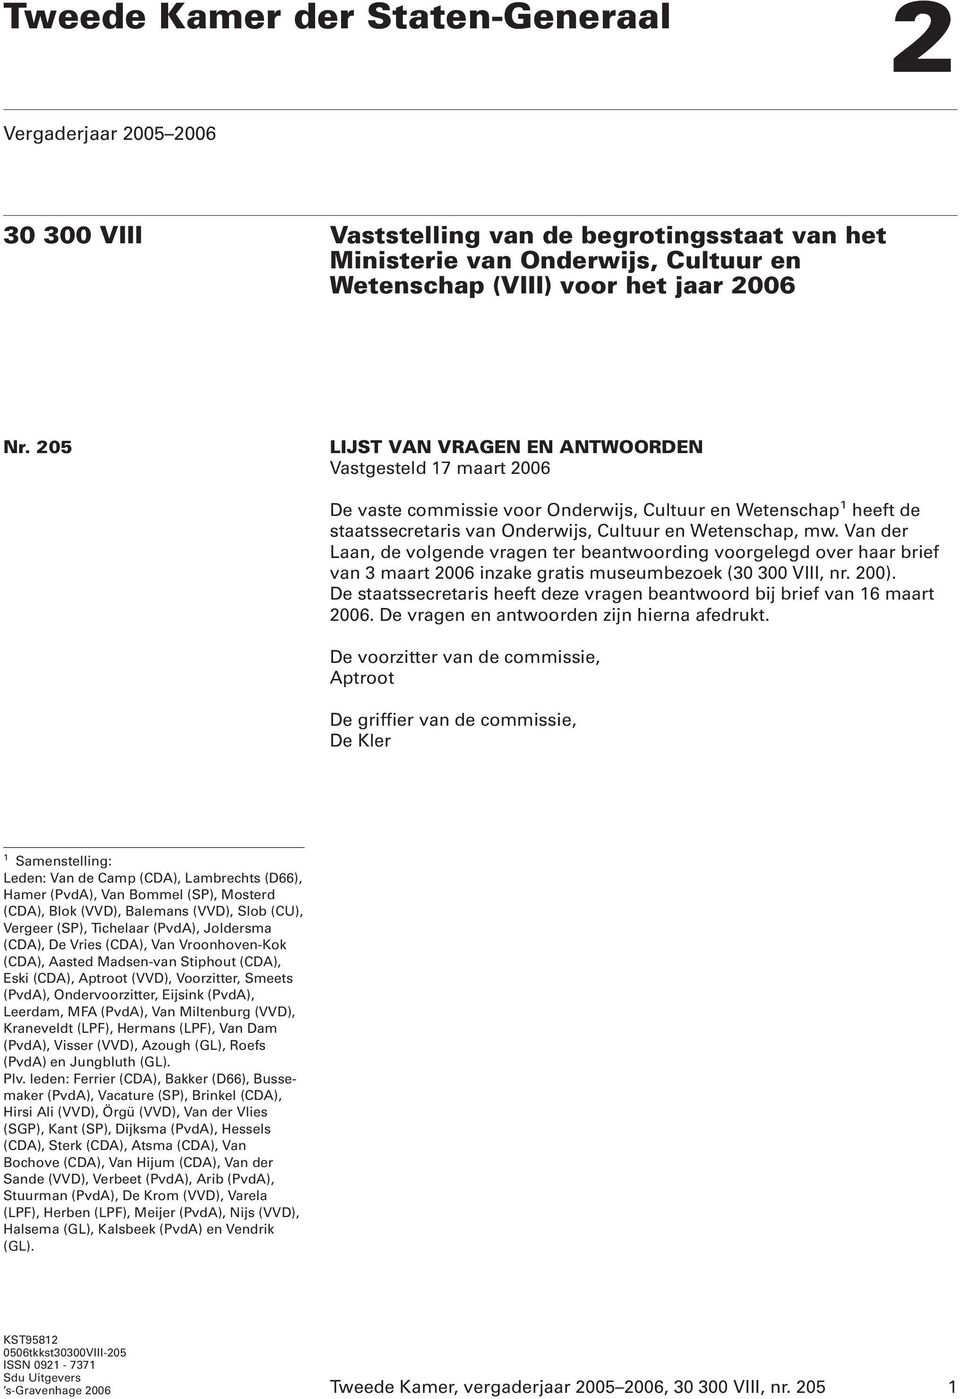 Van der Laan, de volgende vragen ter beantwoording voorgelegd over haar brief van 3 maart 2006 inzake gratis museumbezoek (30 300 VIII, nr. 200).